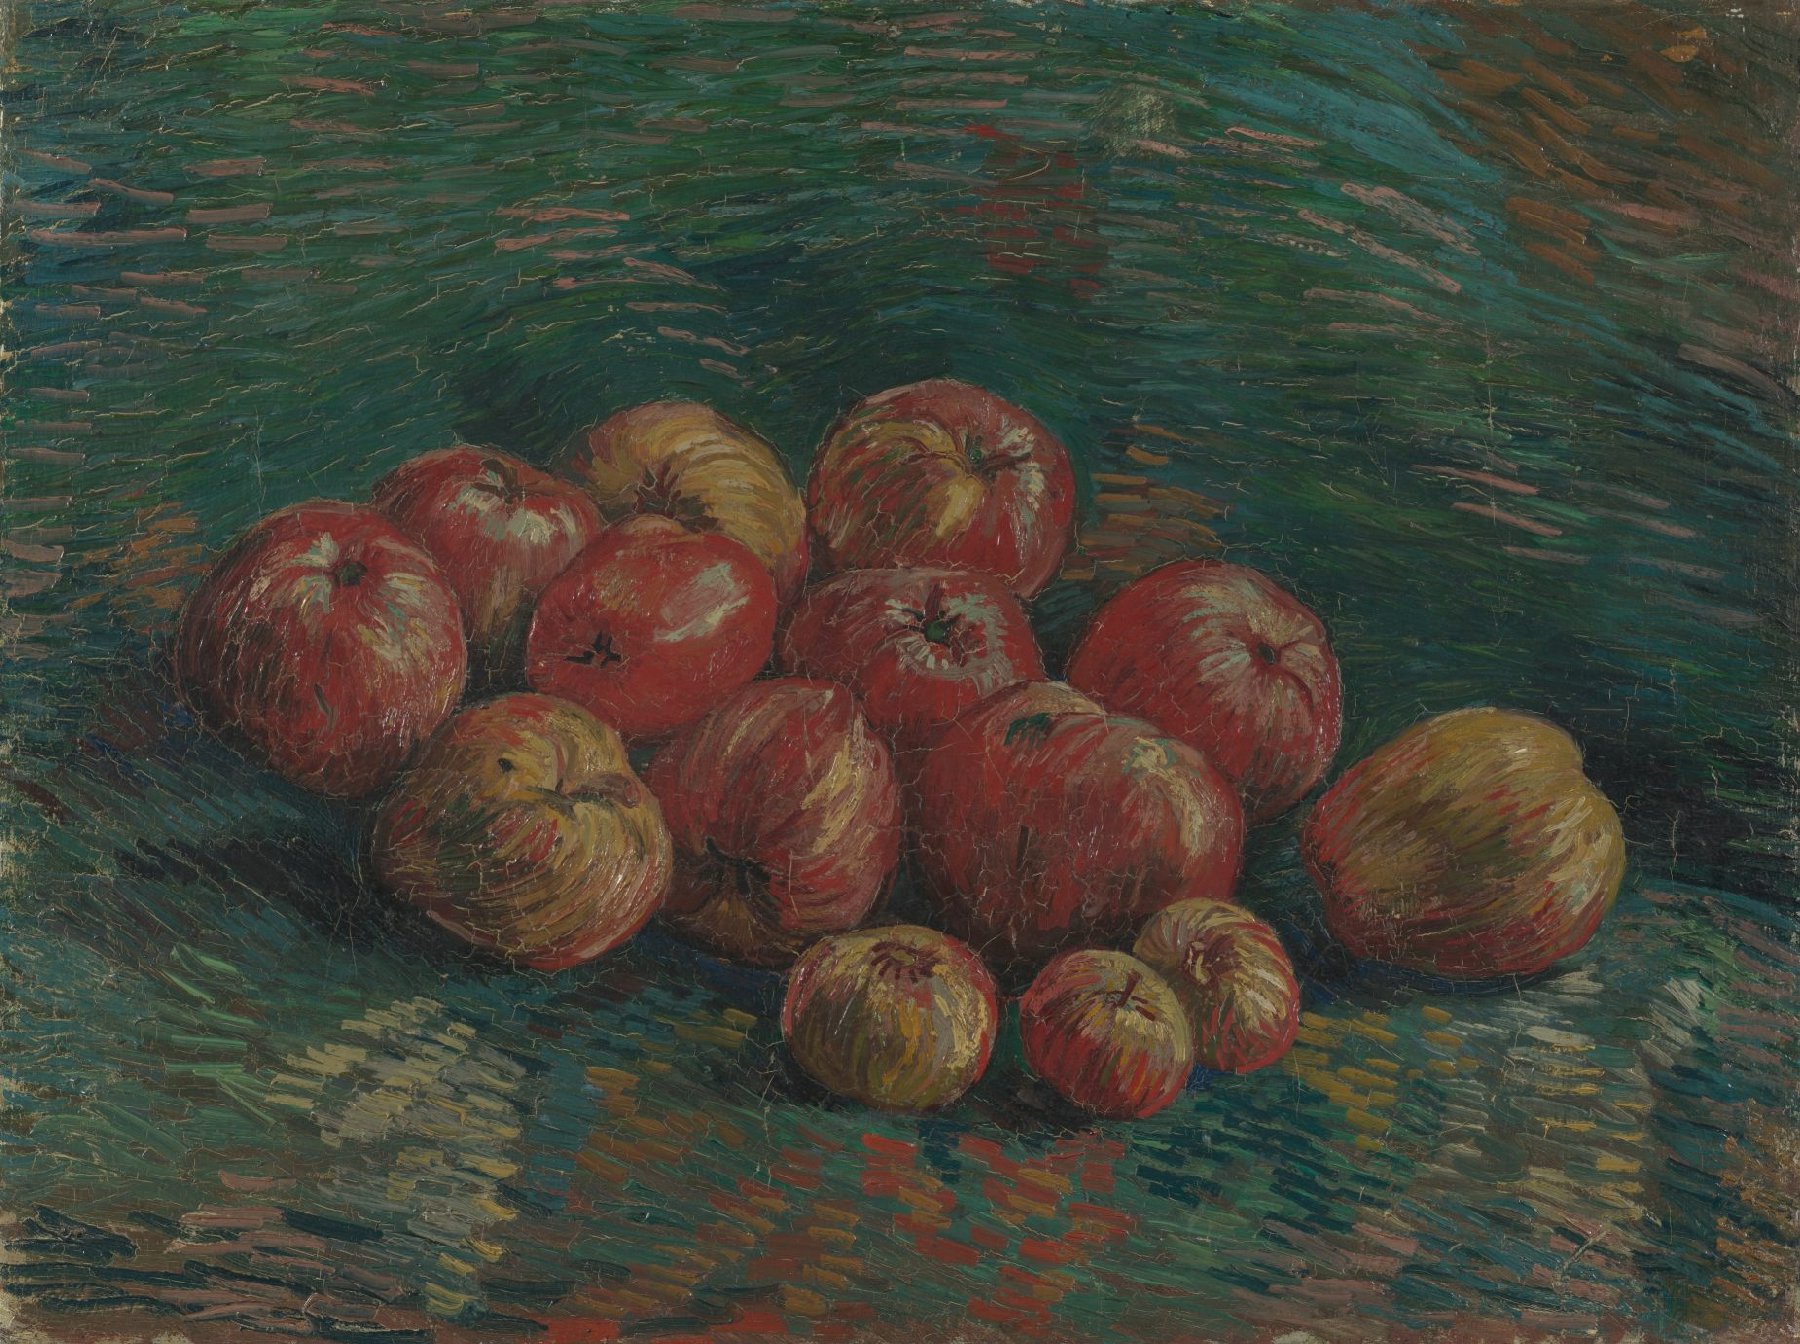 Appels Vincent van Gogh (1853 - 1890), Parijs, september-oktober 1887